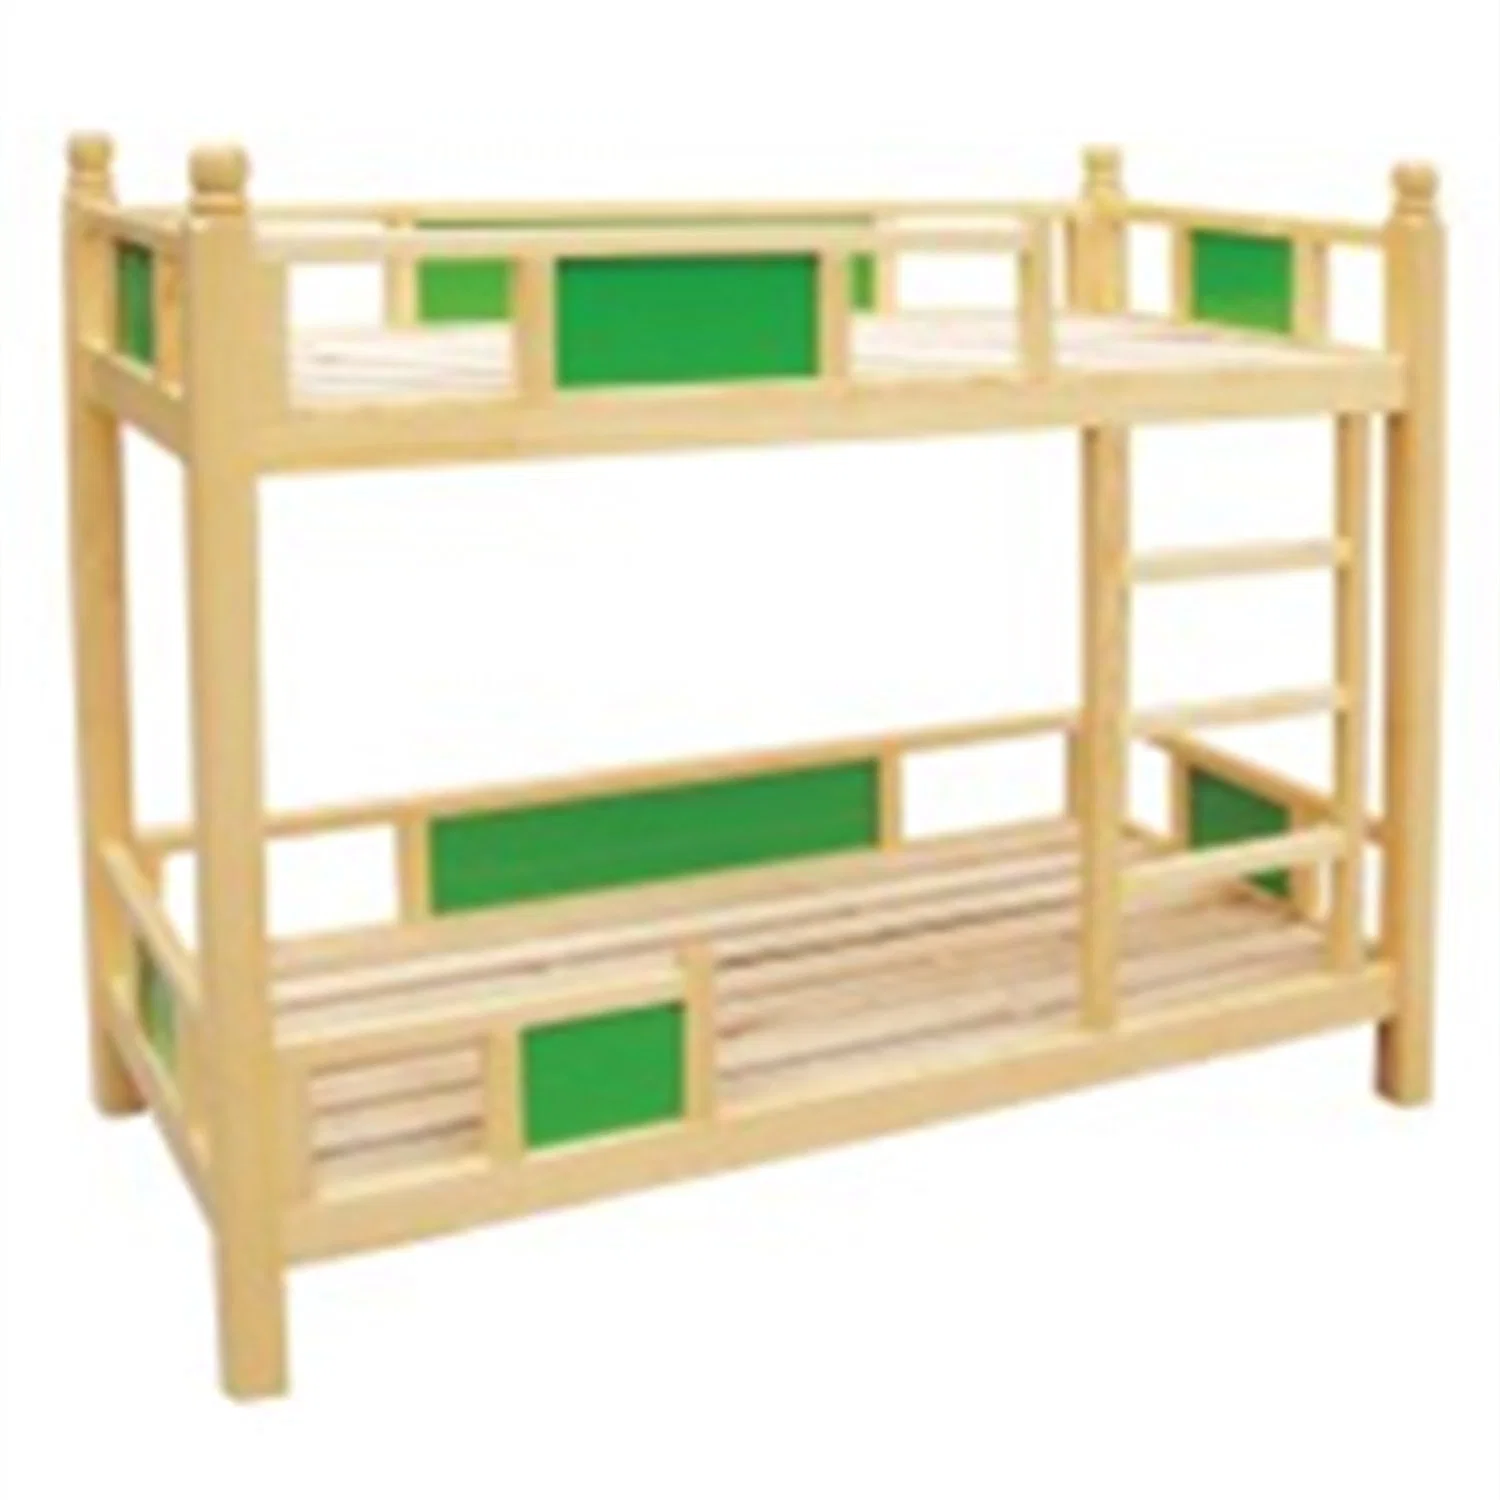 Cama individual de madera maciza para niños de jardín de infantes, muebles escolares para niños Mz61.